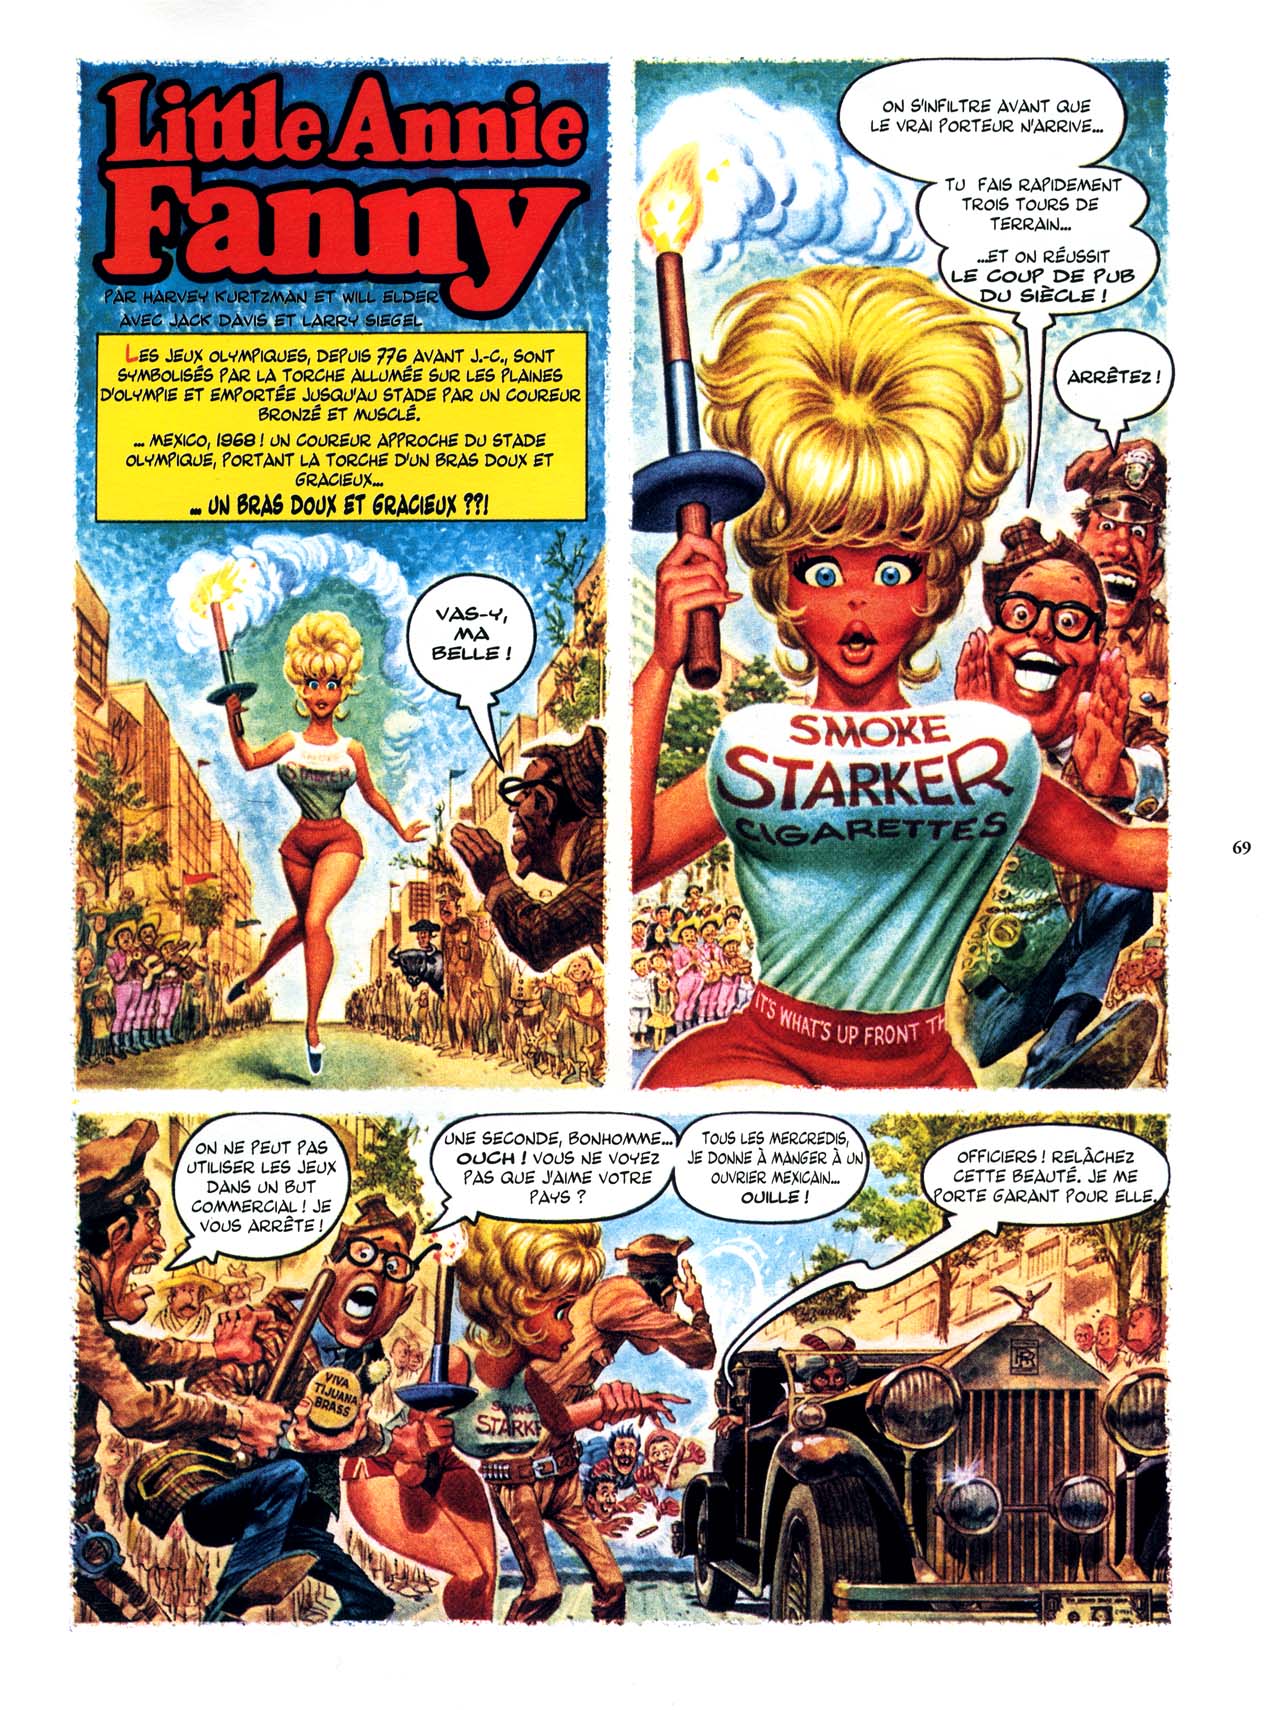 Playboys Little Annie Fanny Vol. 2 - 1965-1970 numero d'image 69